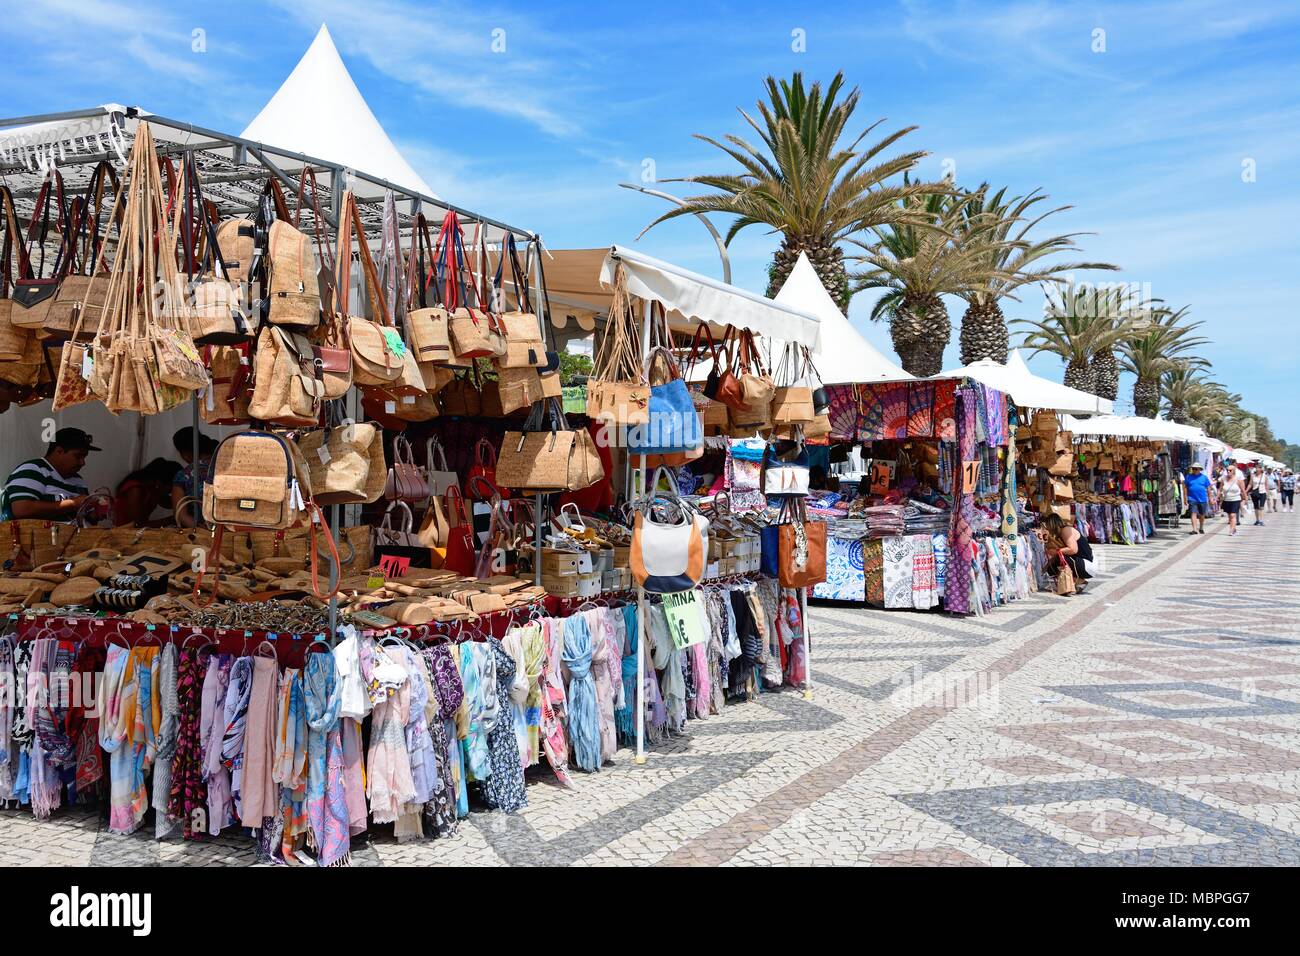 Marktstände entlang der Avenida dos Descobrimentos mit Touristen, die Einstellung, Lagos, Algarve, Portugal, Europa. Stockfoto